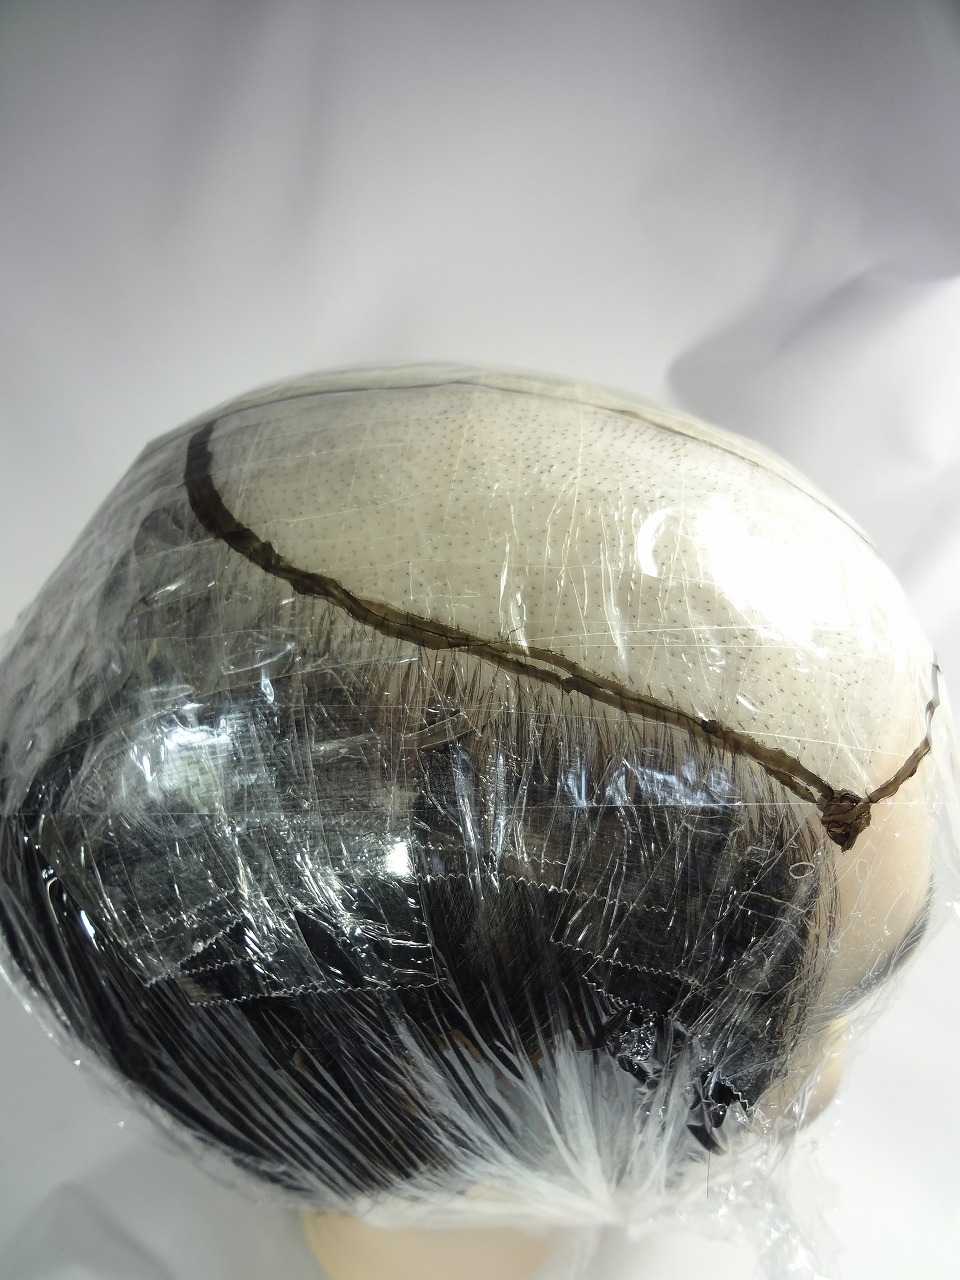 カツラの作り方 テンプレート かつら 貼る増毛の型 の簡単な作り方 サンプル毛の採り方